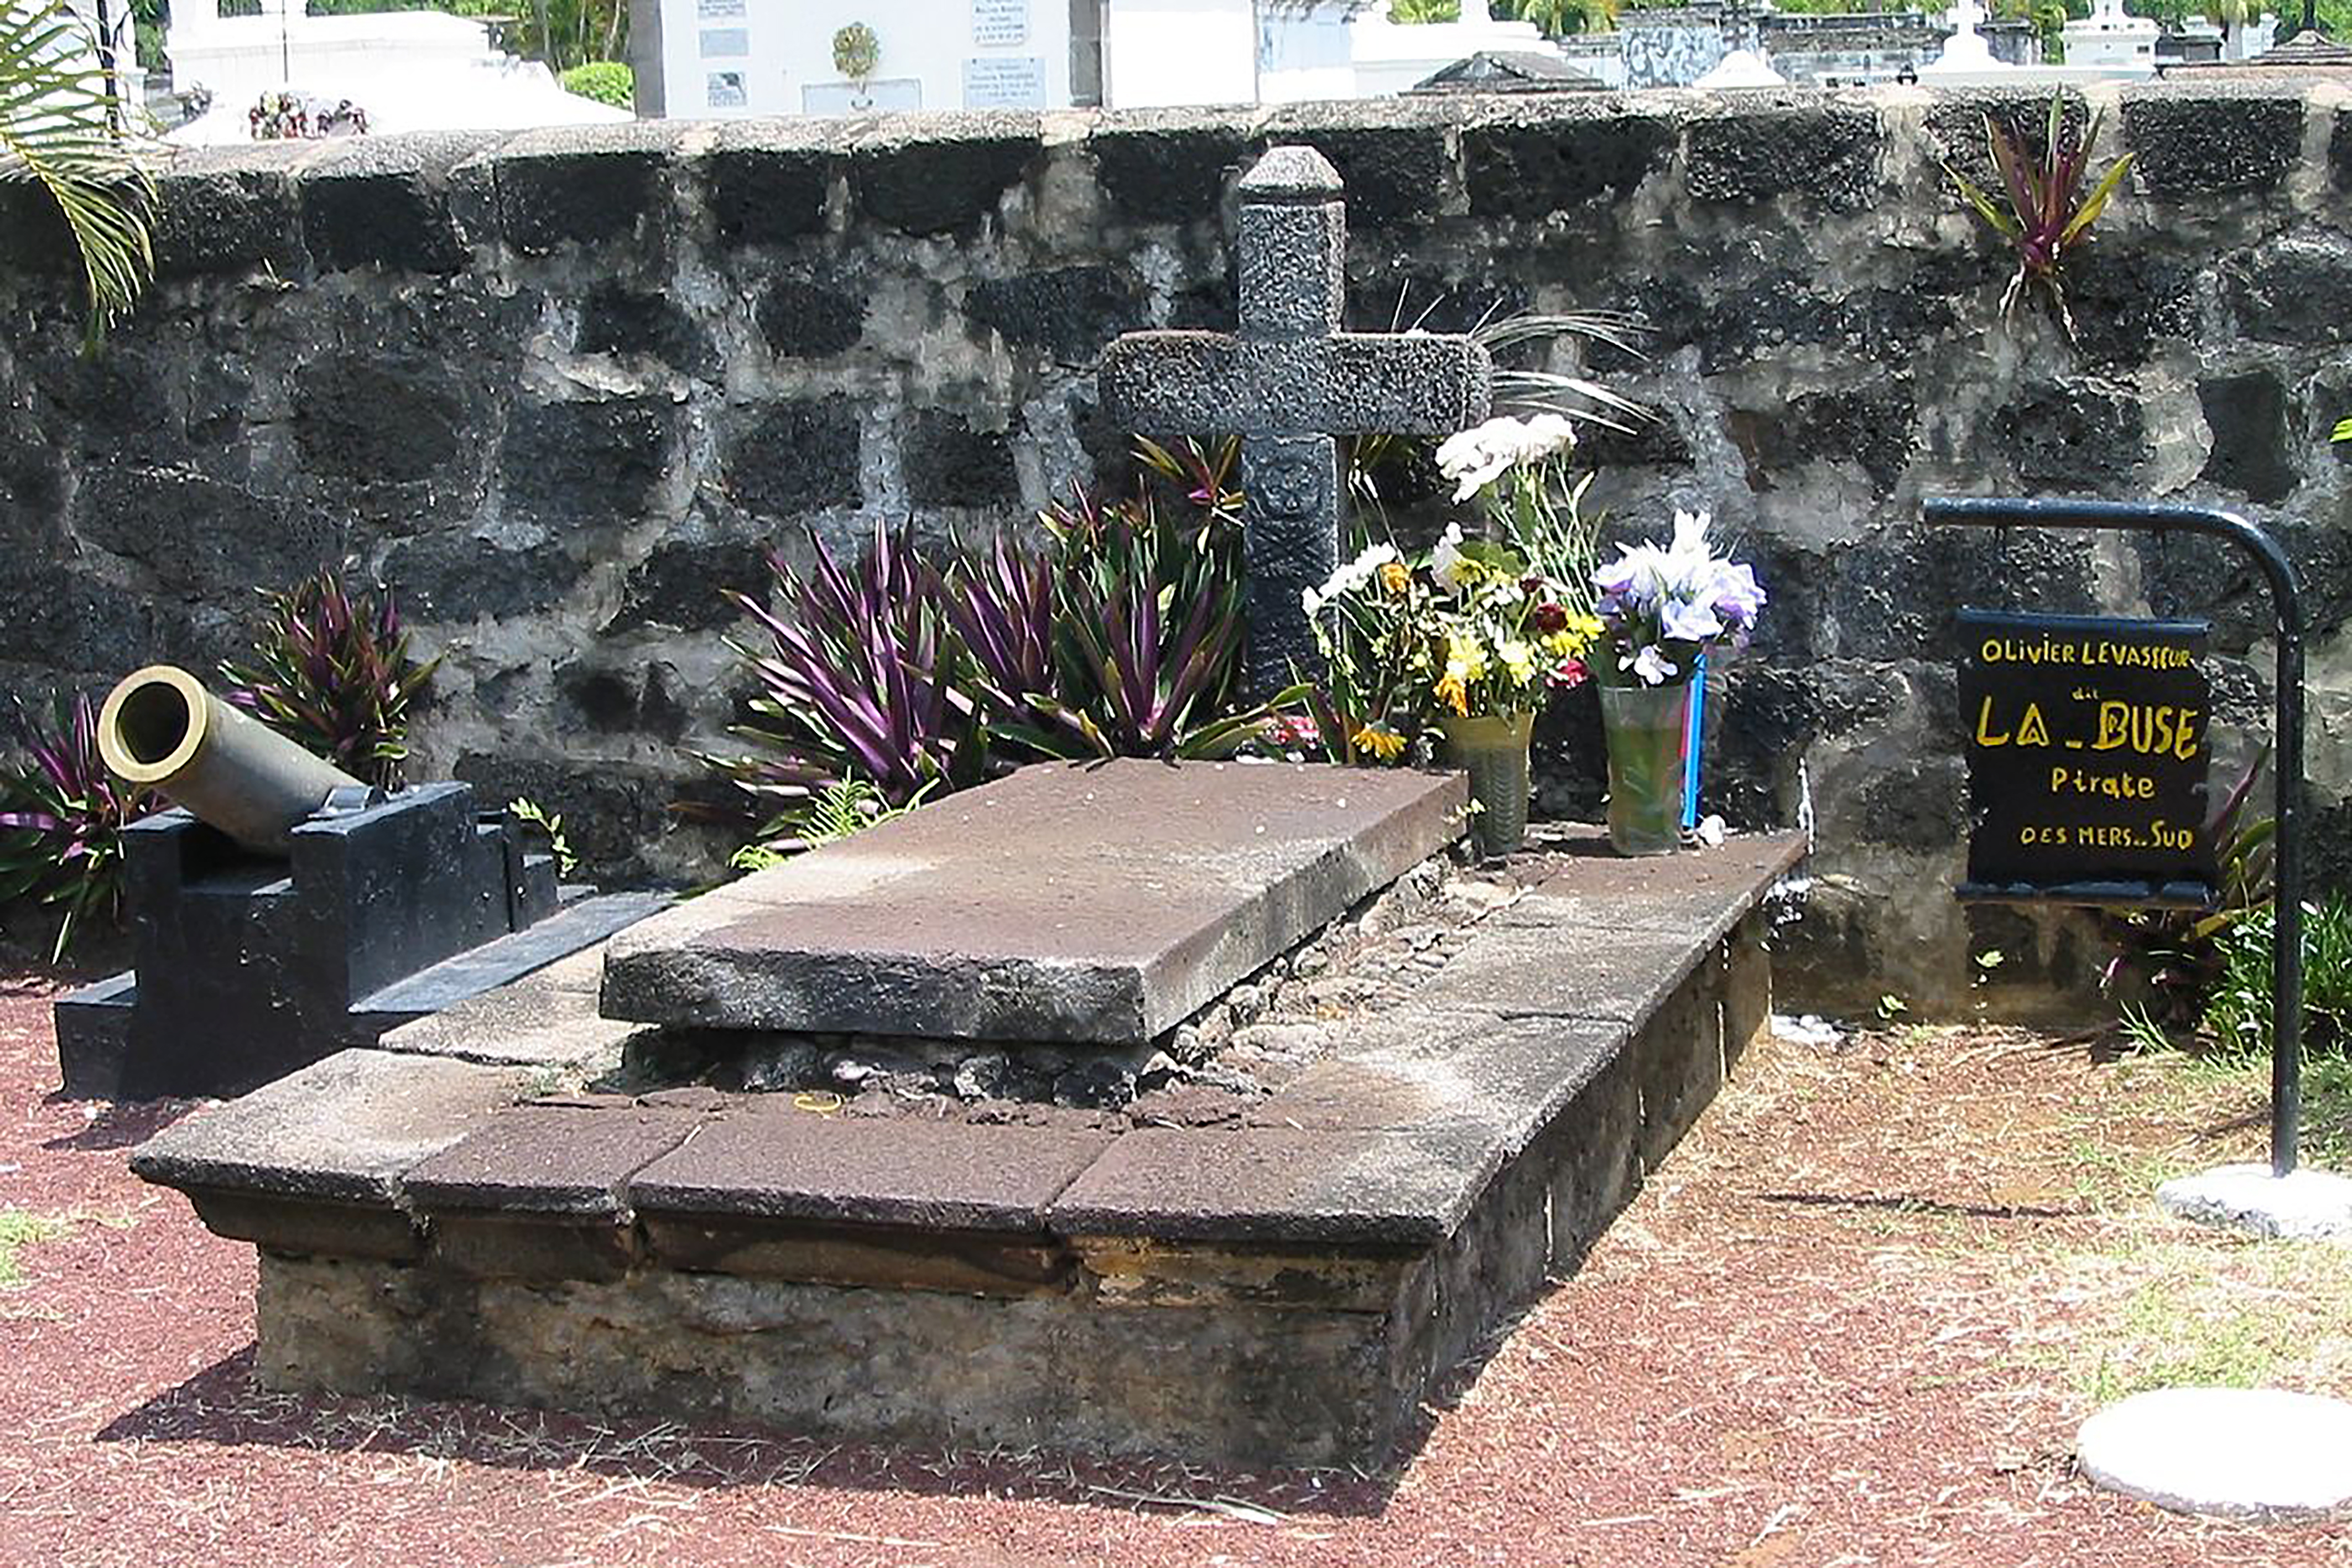 La tombe de La Buse au cimetière marin de Saint-Paul ne contient pas le corps du célèbre pirate !